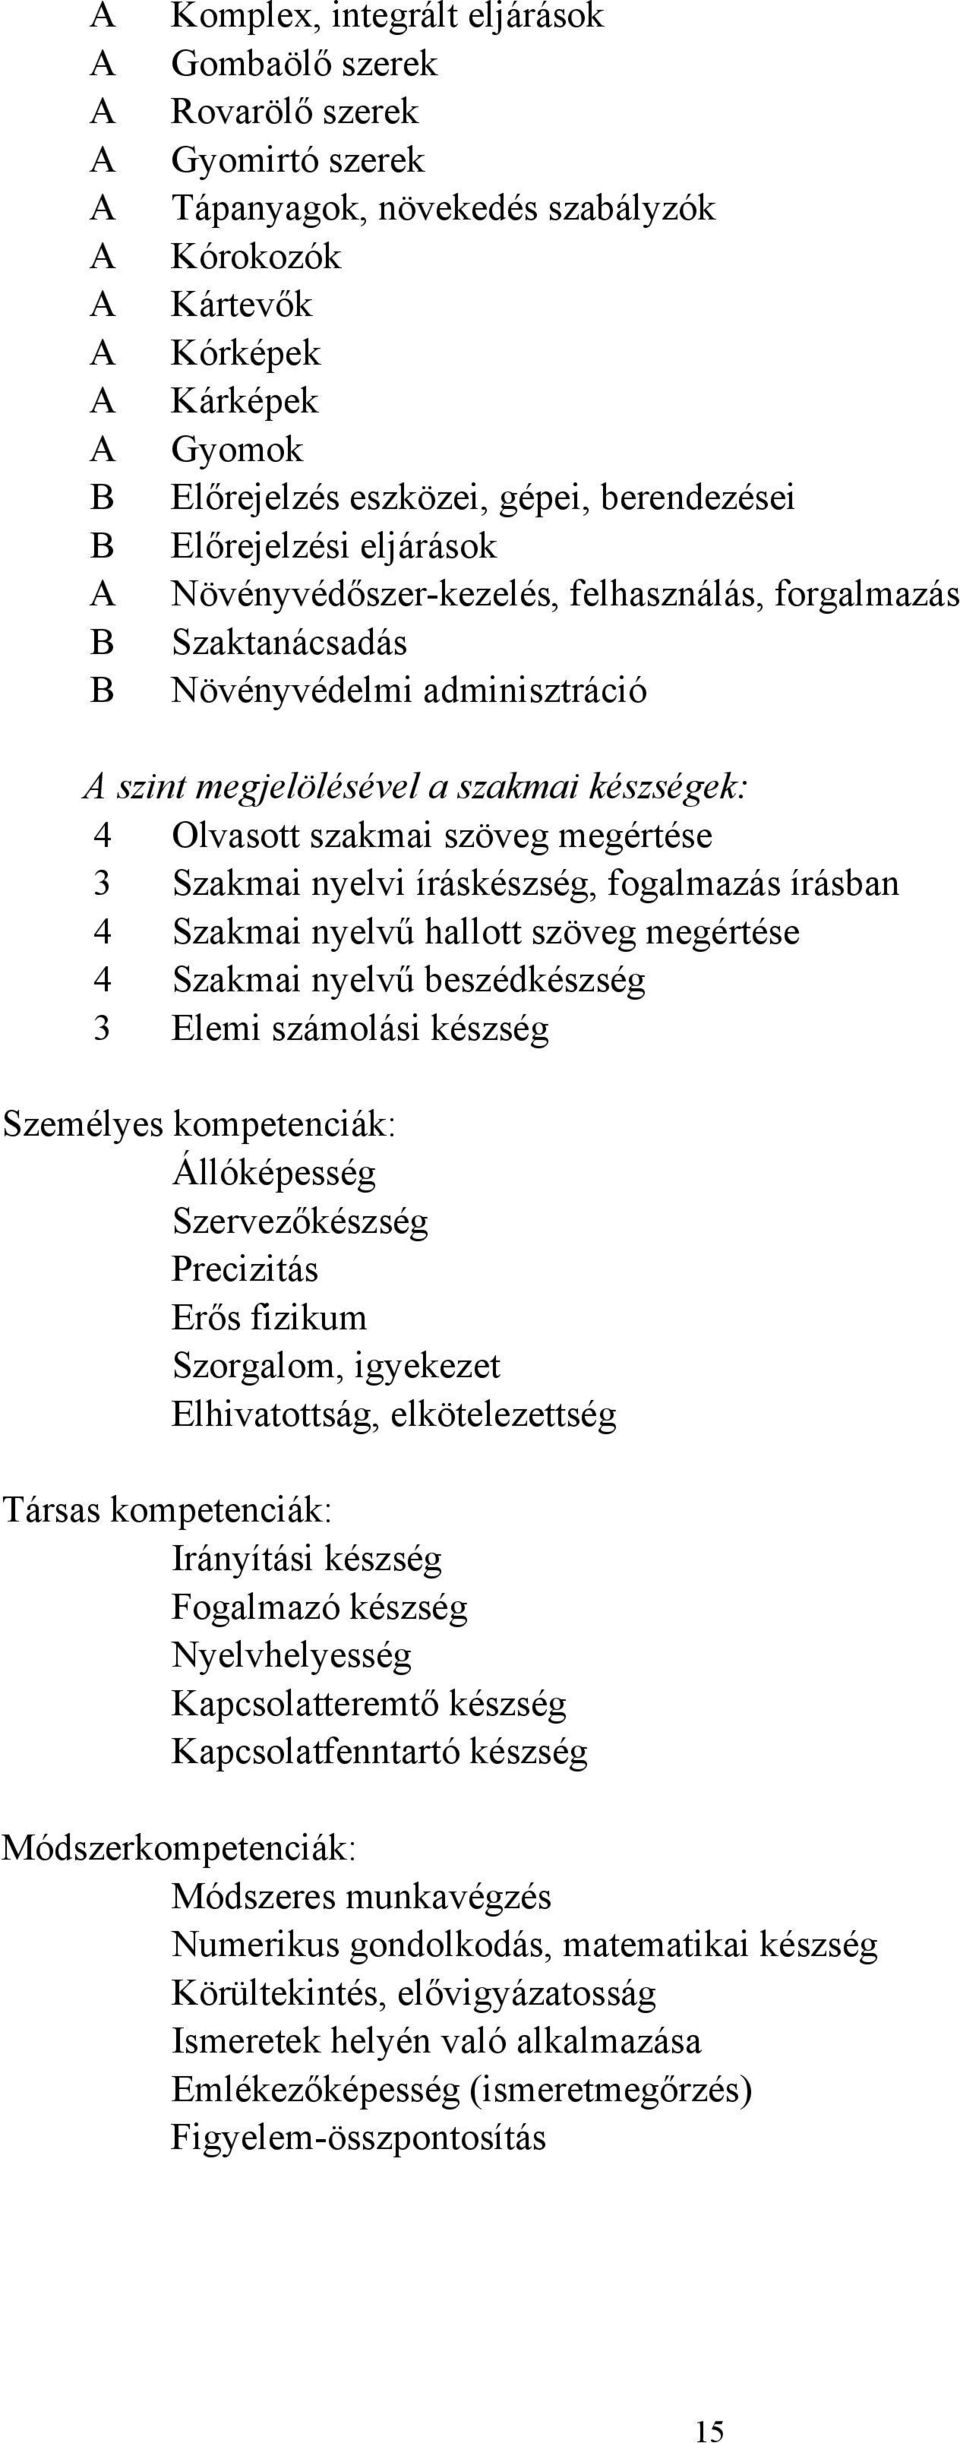 Olvasott szakmai szöveg megértése 3 Szakmai nyelvi íráskészség, fogalmazás írásban 4 Szakmai nyelvű hallott szöveg megértése 4 Szakmai nyelvű beszédkészség 3 Elemi számolási készség Személyes